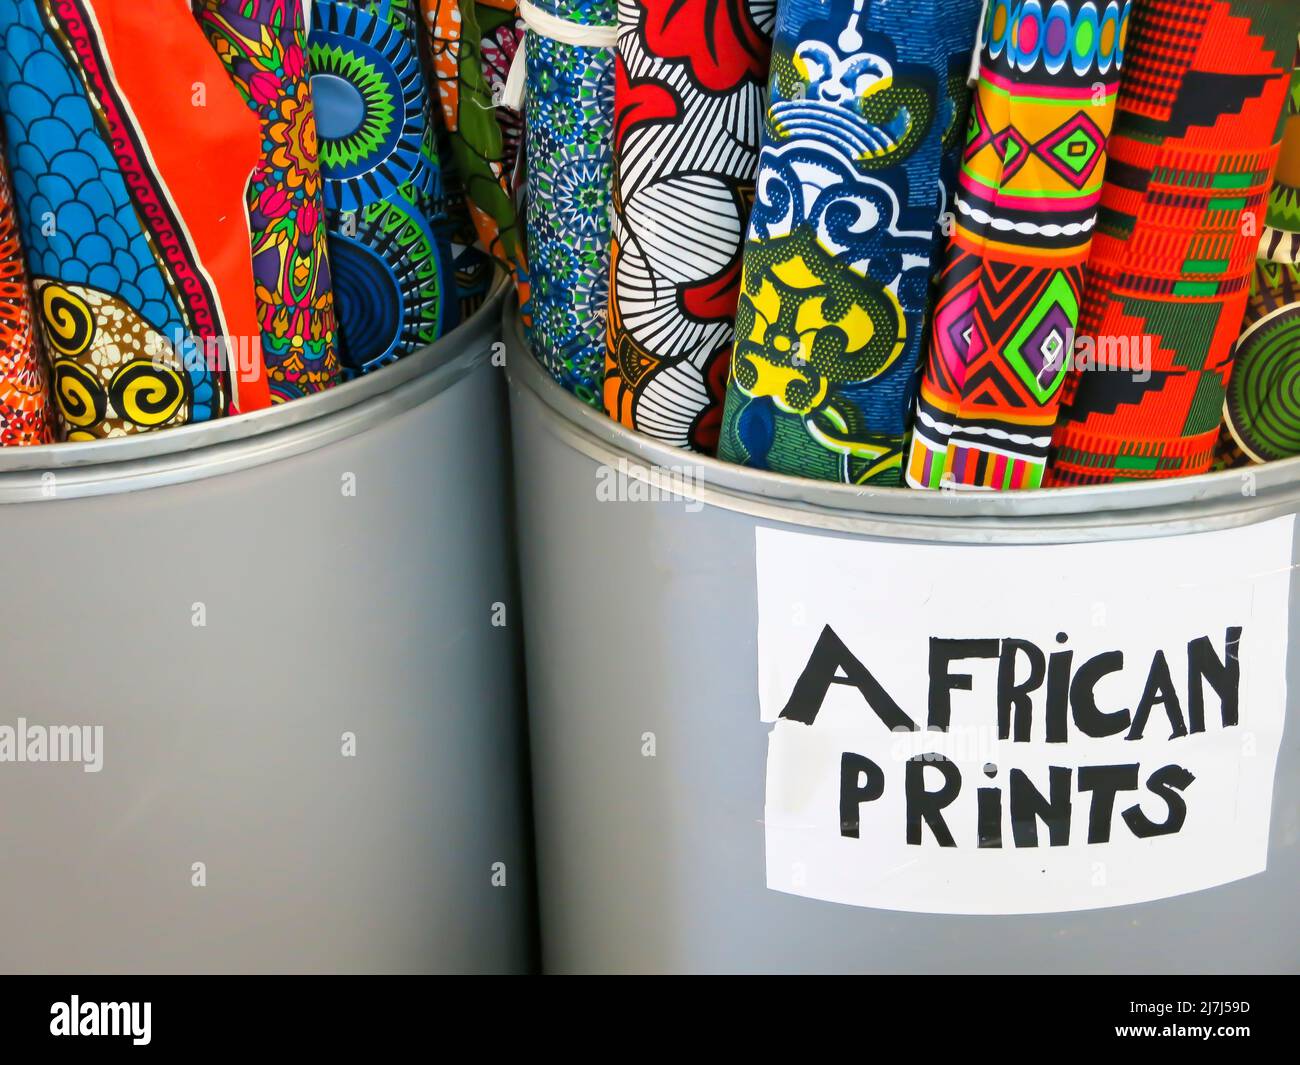 Matériel imprimé afriafricain disponible à la vente Banque D'Images